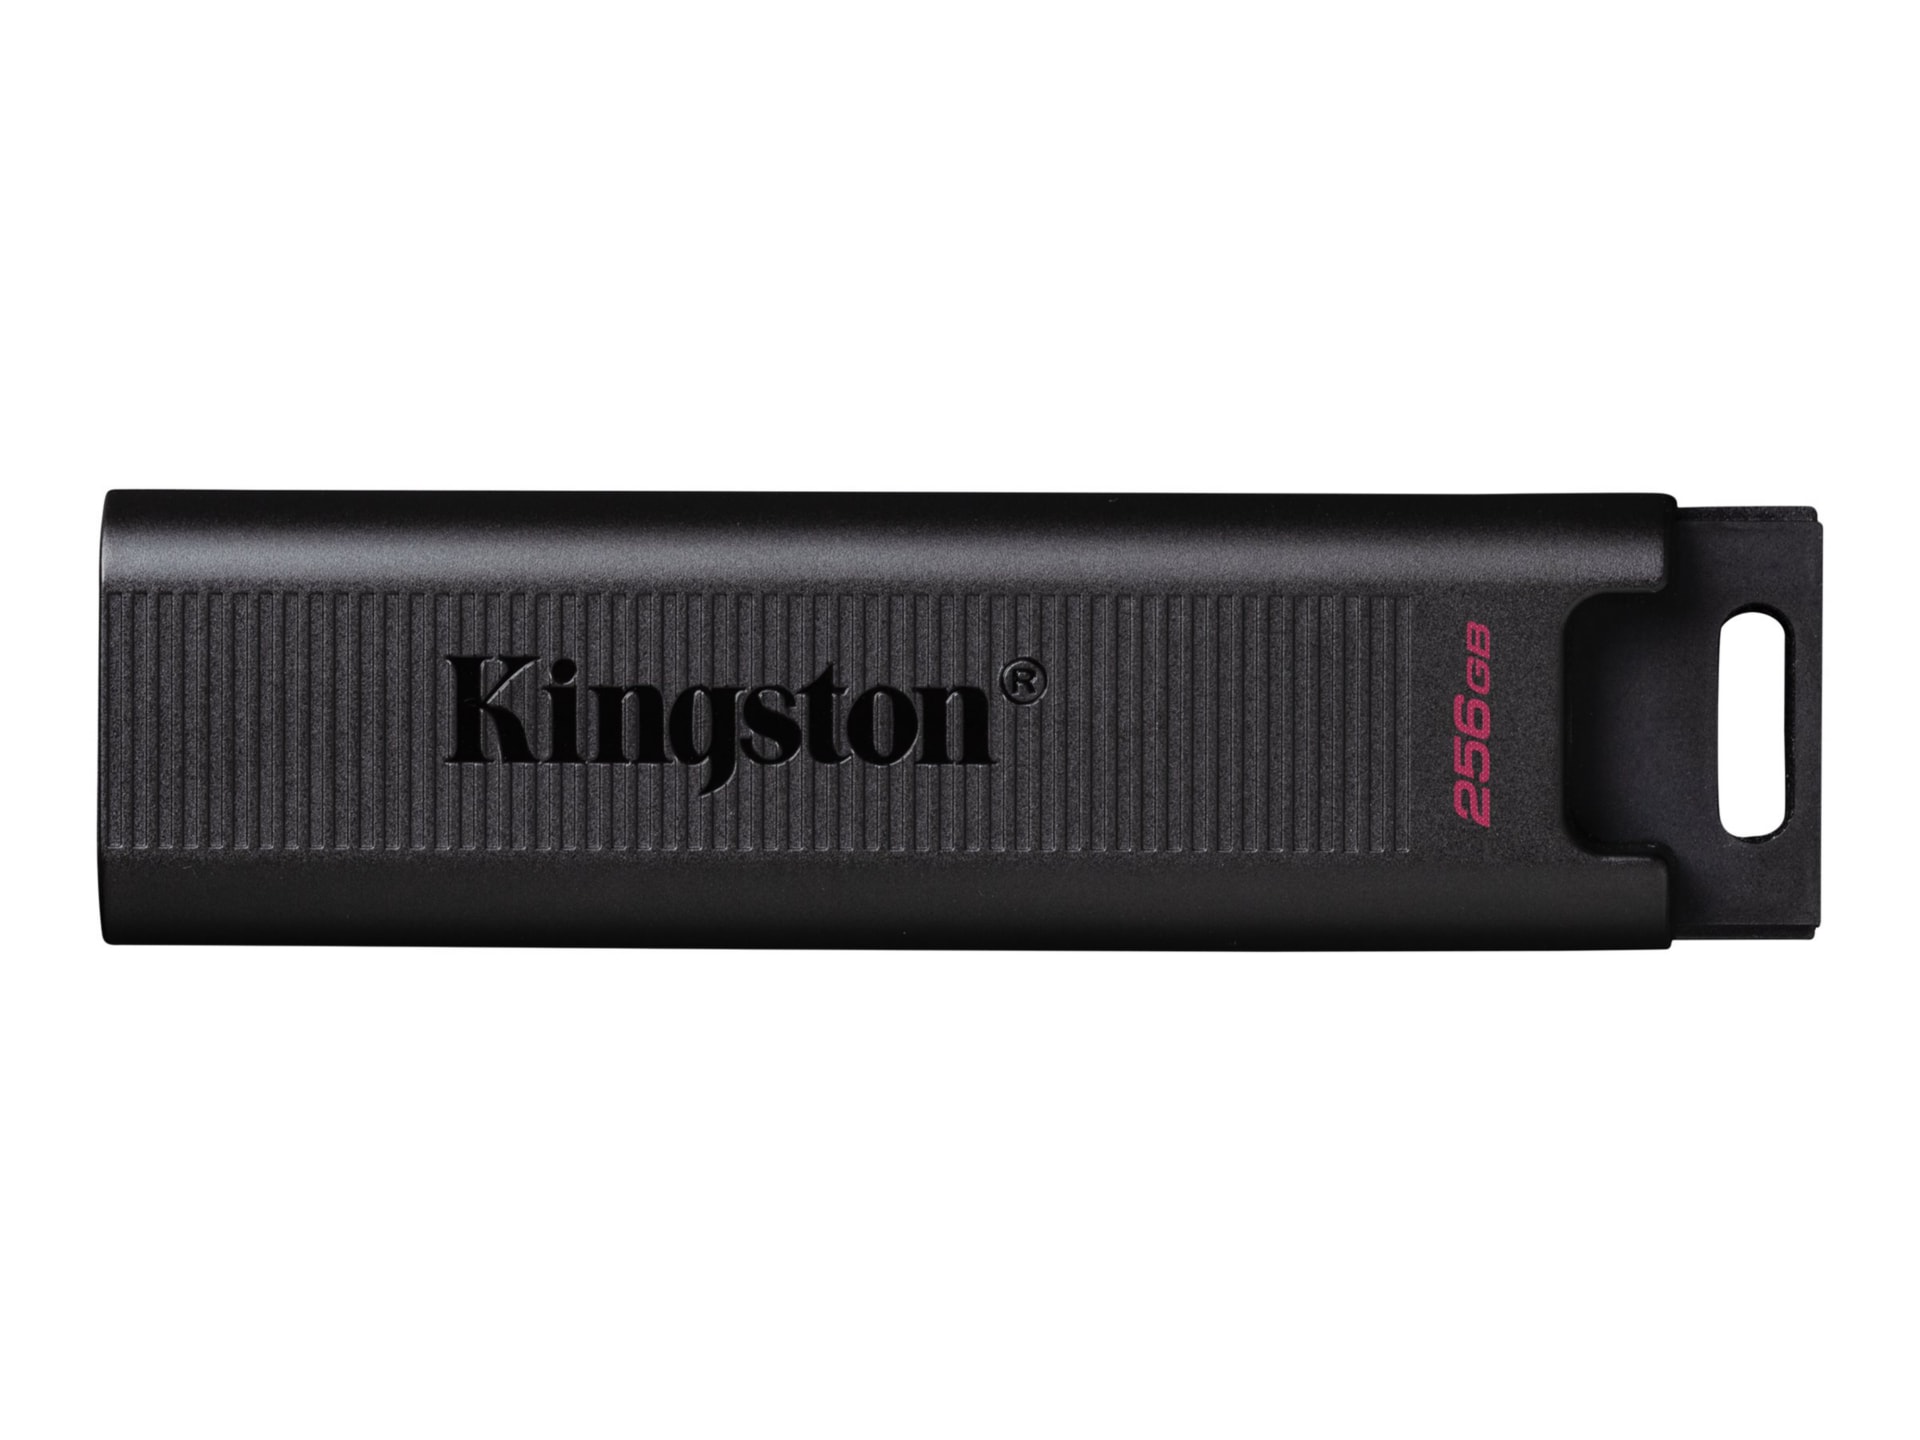 Kingston DataTraveler Max - USB flash drive - 256 GB - DTMAX/256GB - Flash Drives - CDW.com